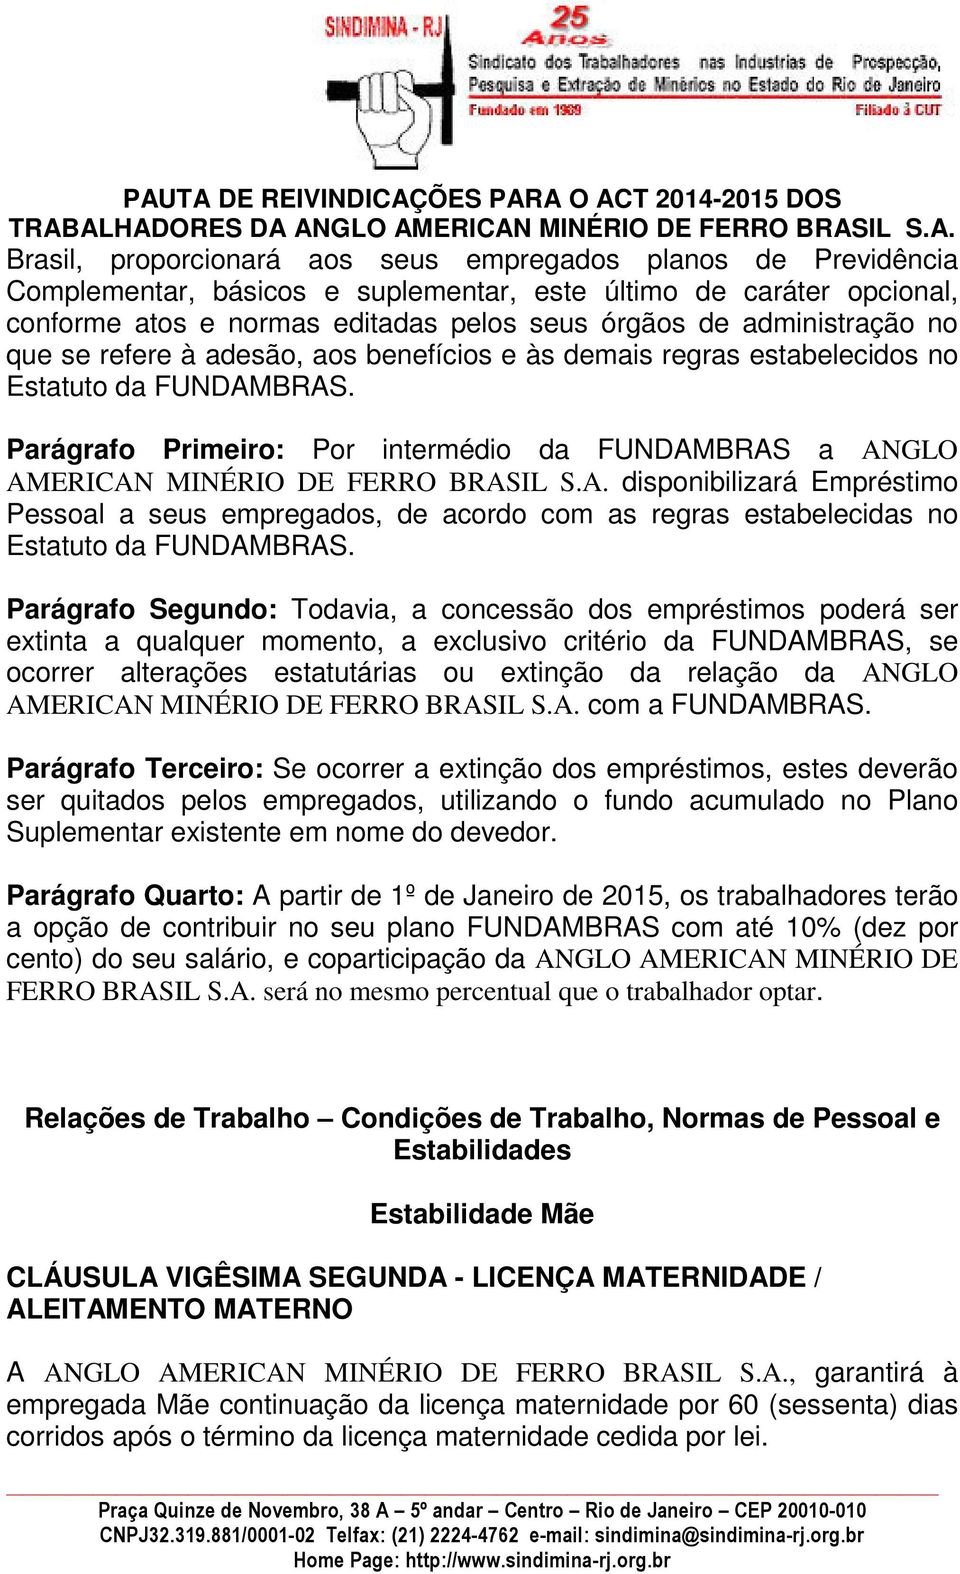 Parágrafo Primeiro: Por intermédio da FUNDAMBRAS a ANGLO AMERICAN MINÉRIO DE FERRO BRASIL S.A. disponibilizará Empréstimo Pessoal a seus empregados, de acordo com as regras estabelecidas no Estatuto da FUNDAMBRAS.